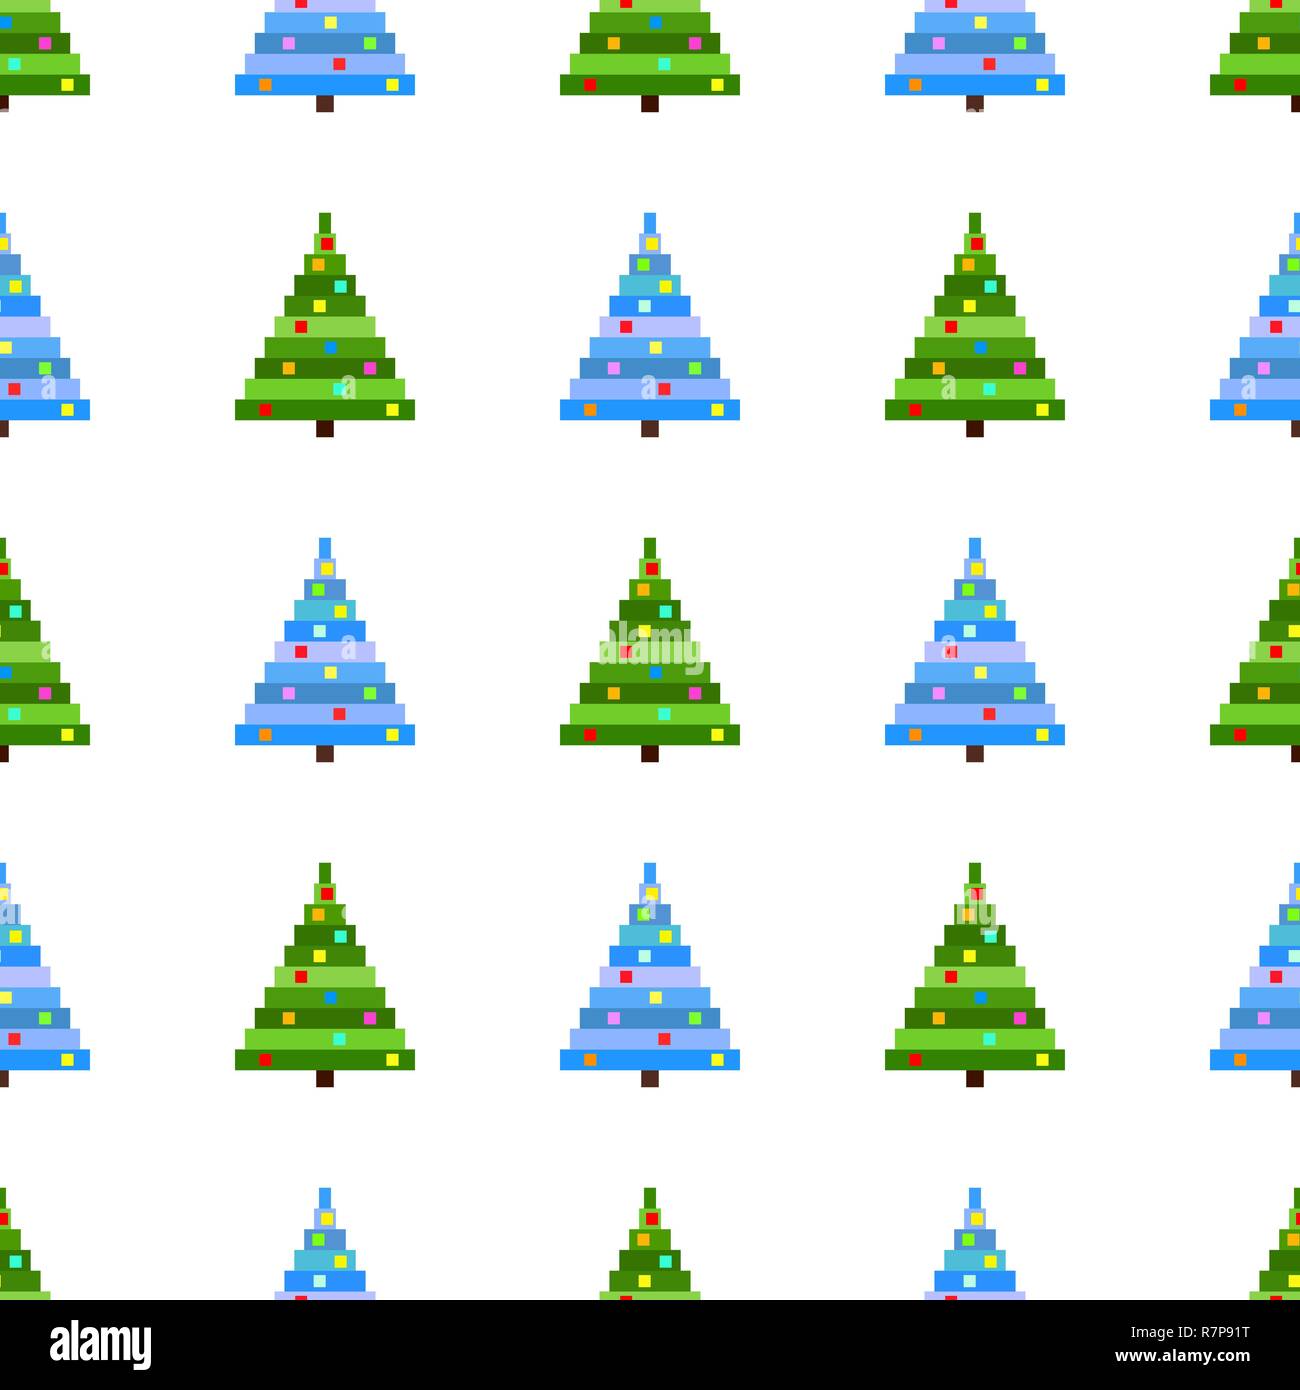 Profil de transparente vecteur pixel art arbre de Noël sur fond blanc. Avec l'arrière-plan vert et bleu de l'arbre de Noël Illustration de Vecteur